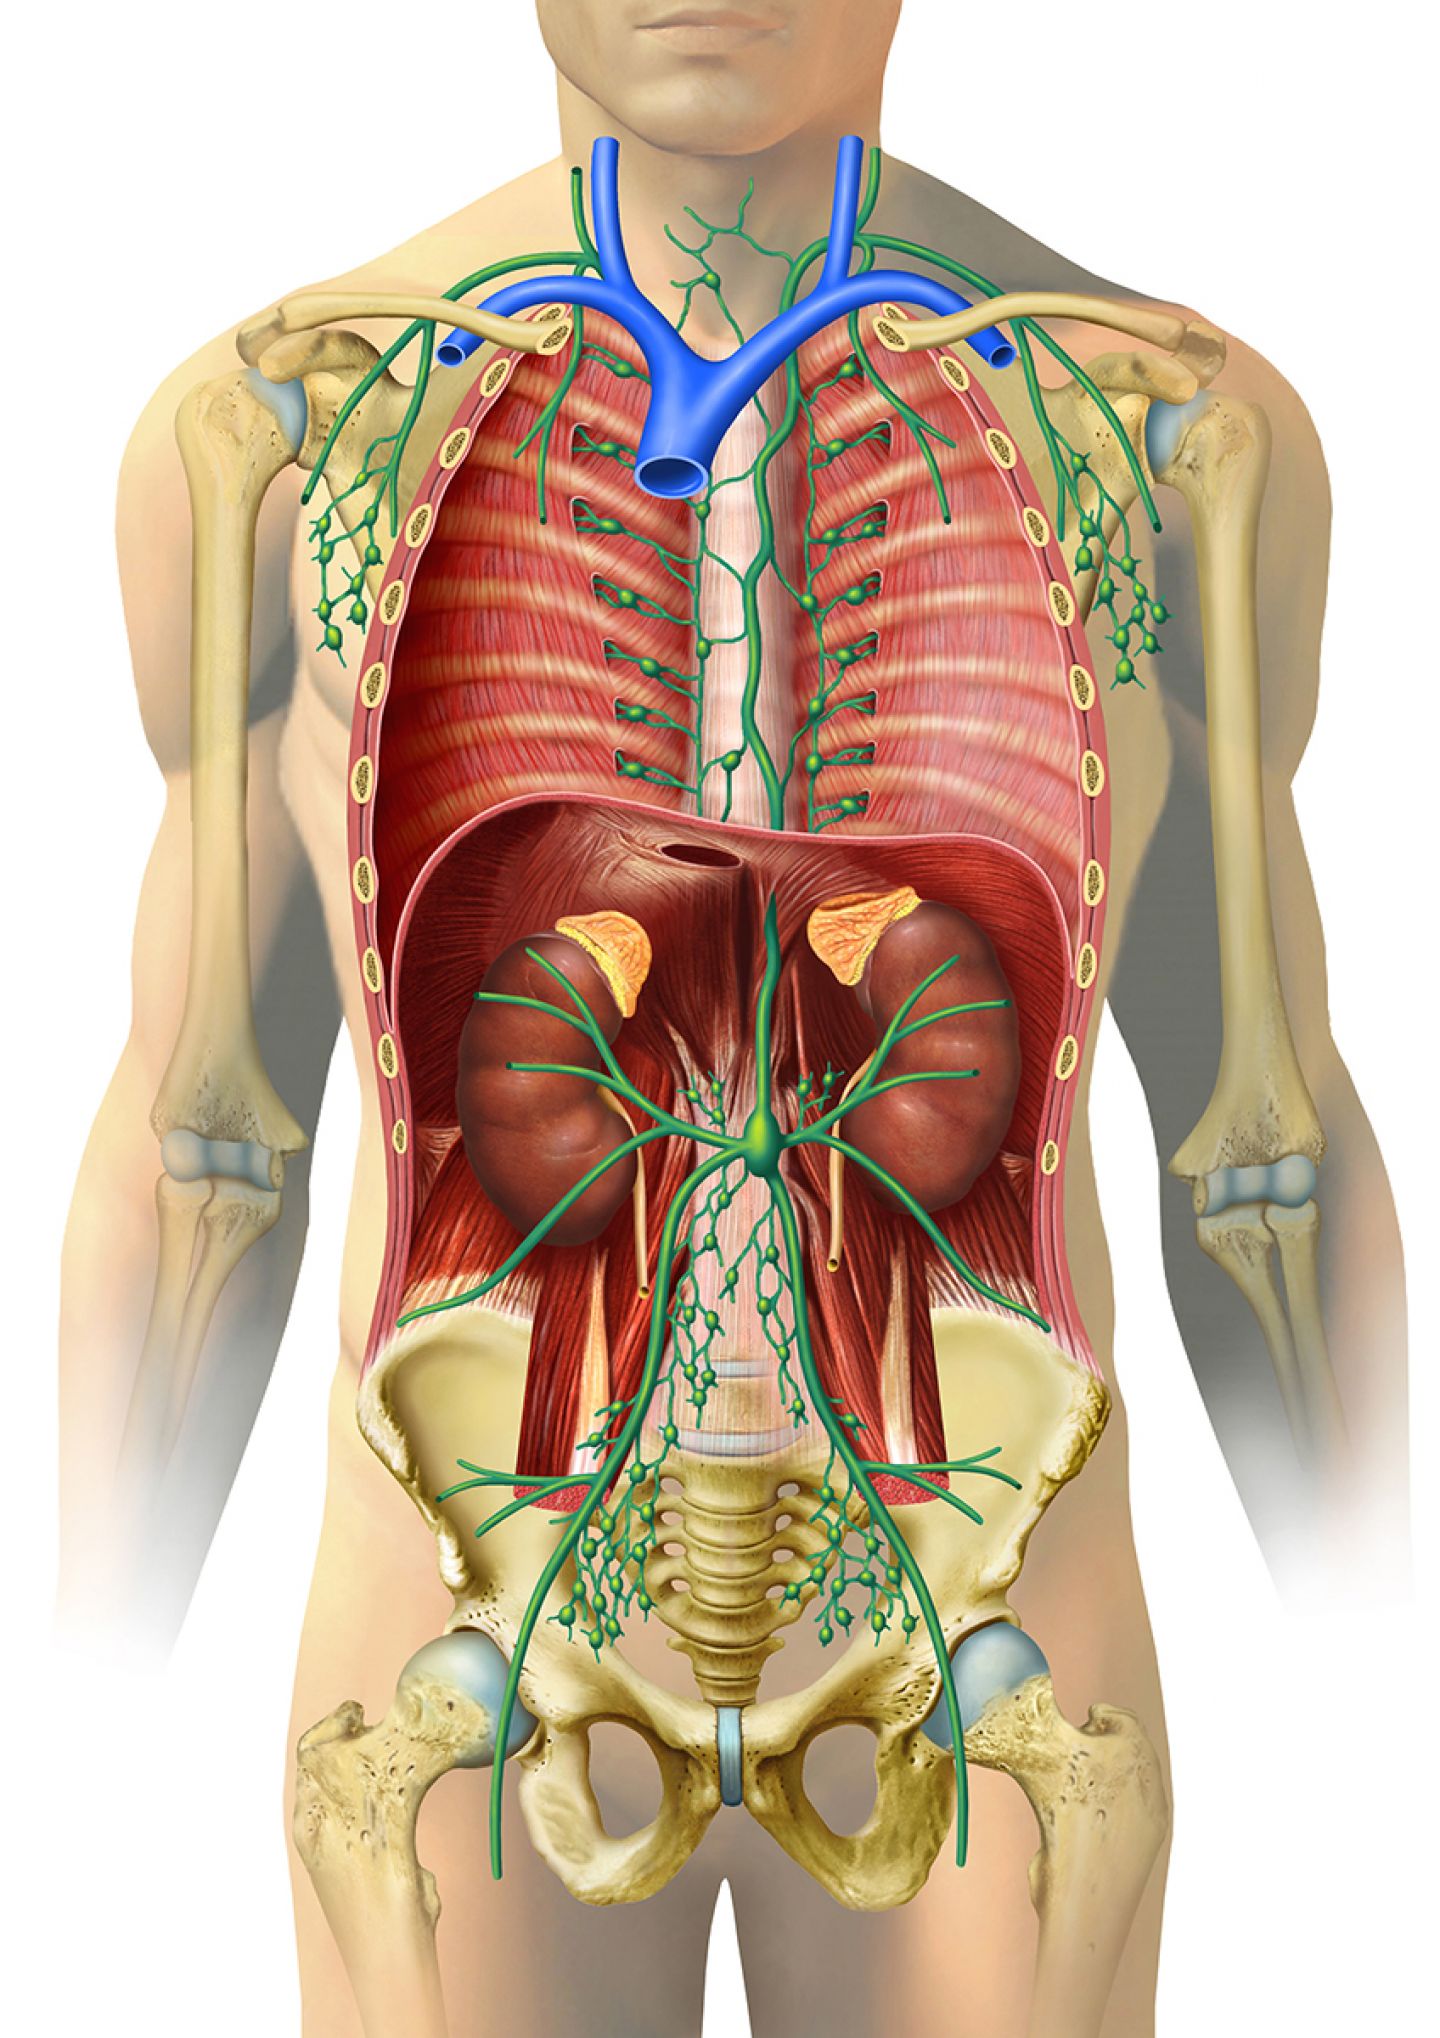 Lymphknoten und -bahnen im menschlichen Körper. Bei Klick vergrößert sich das Bild. © MediDesign Frank Geisler